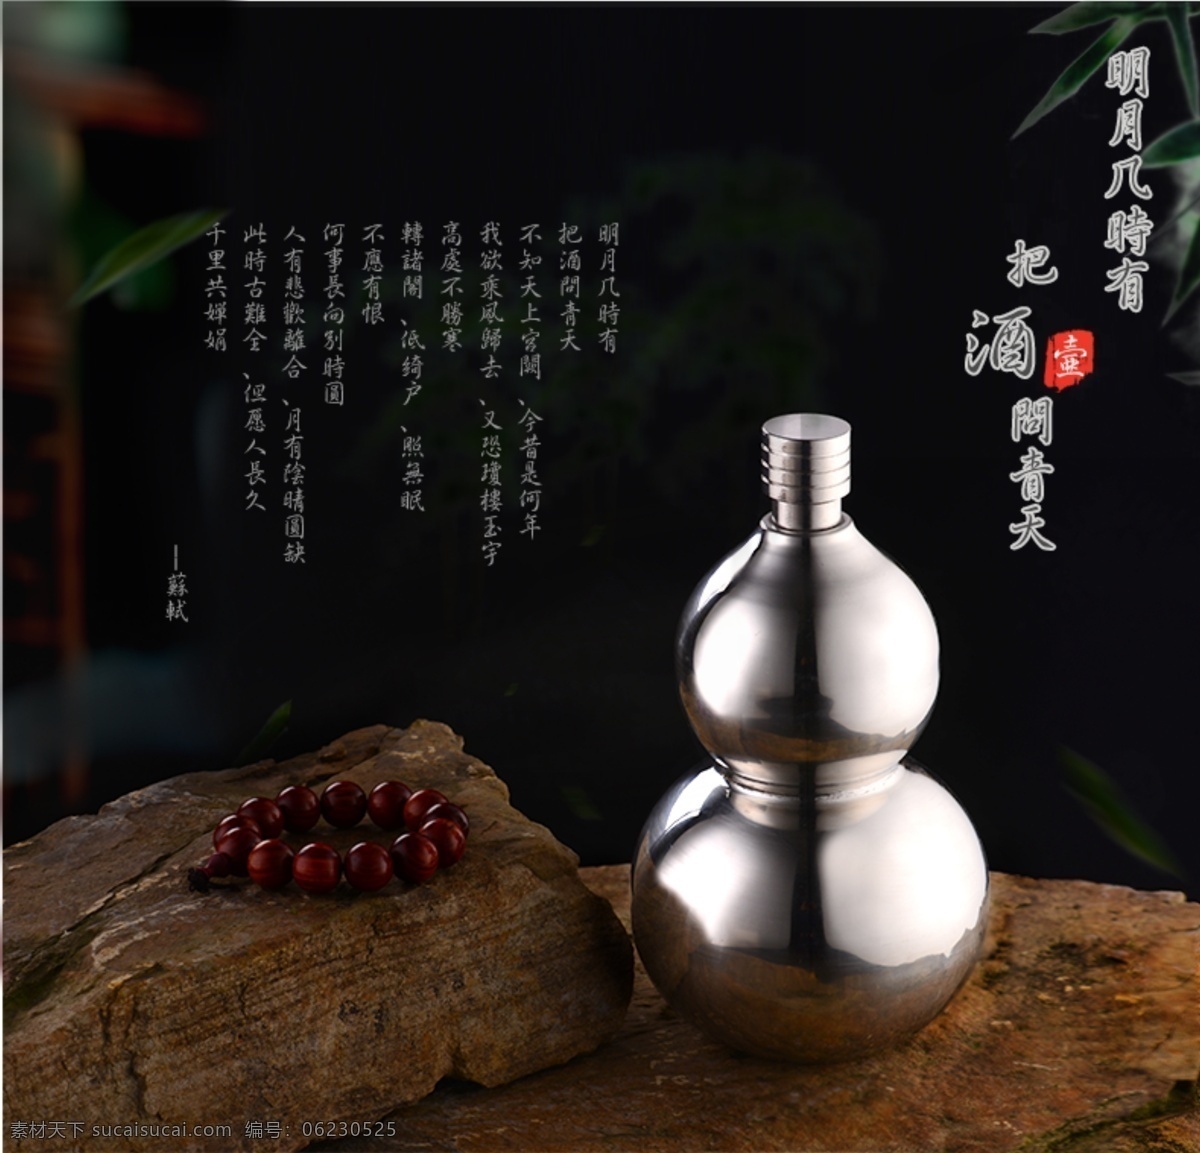 酒壶免费下载 古典 葫芦 酒 酒壶 木质 中国风 原创设计 原创海报